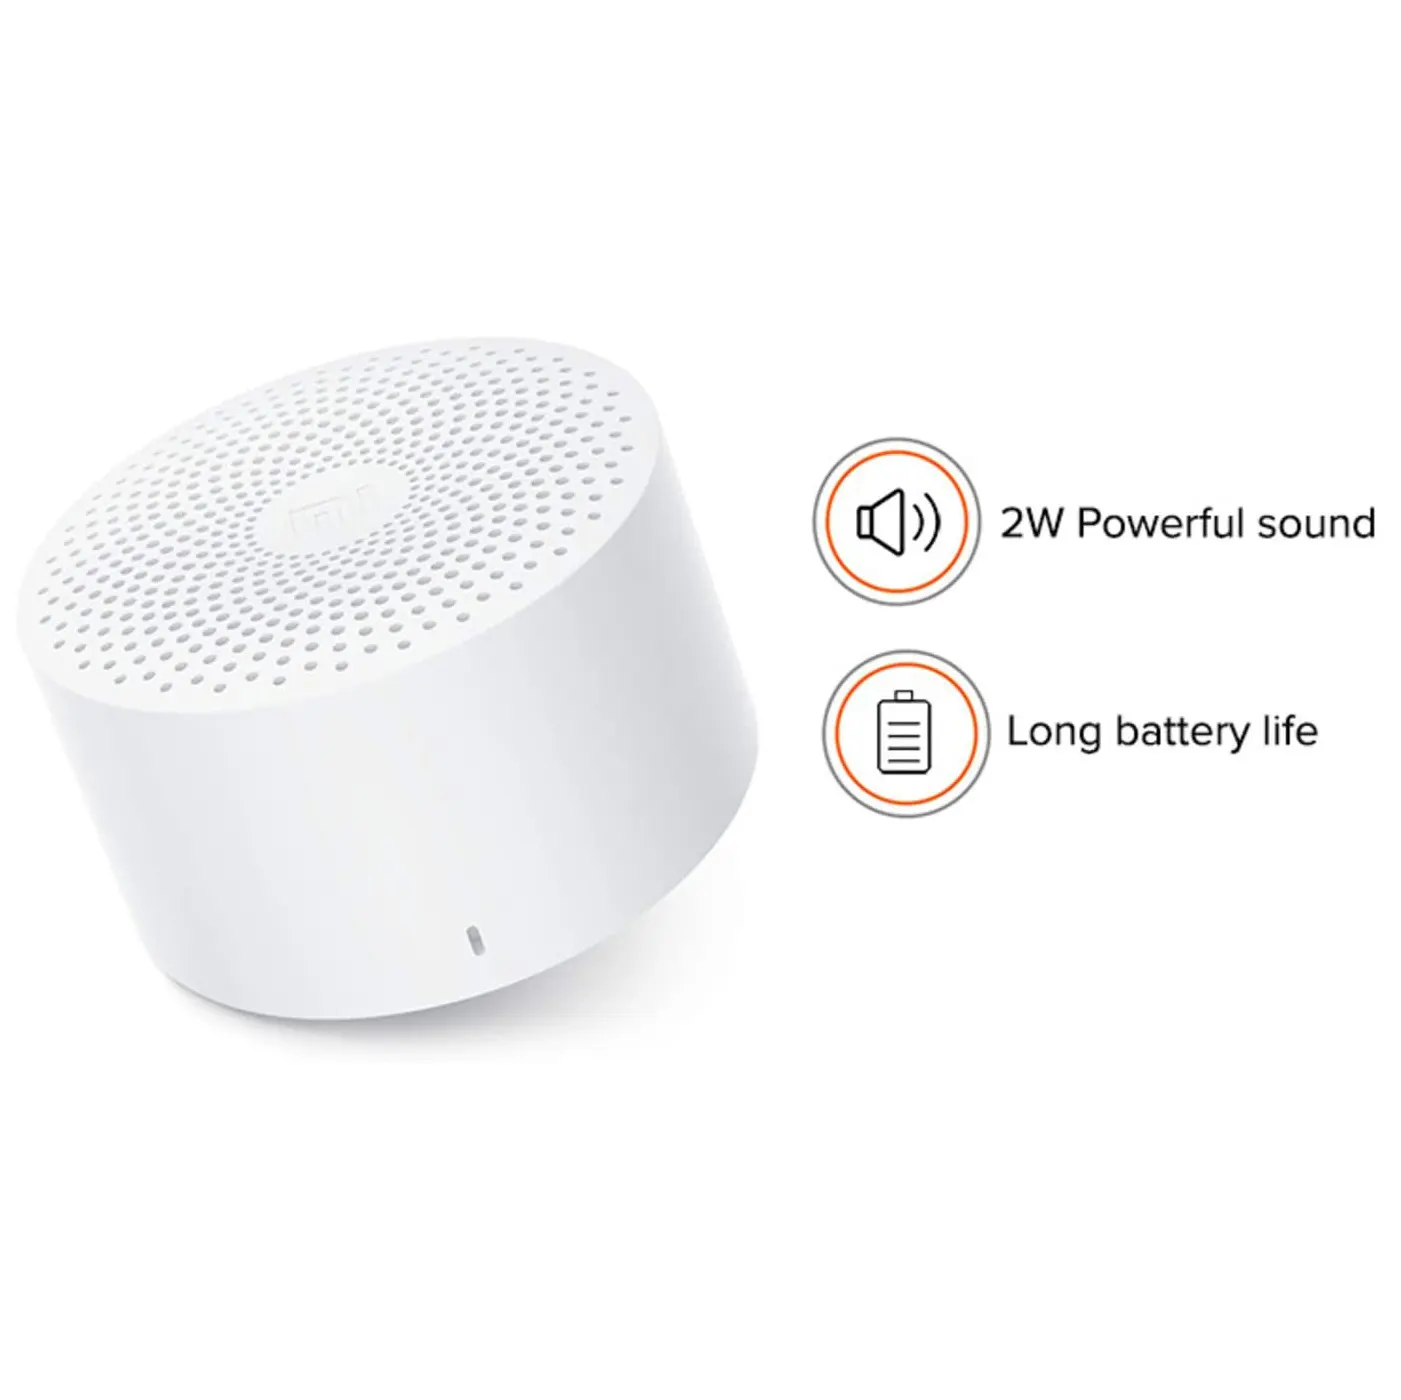 Caixa de Som Bluetooth Mi Compact Speaker 2